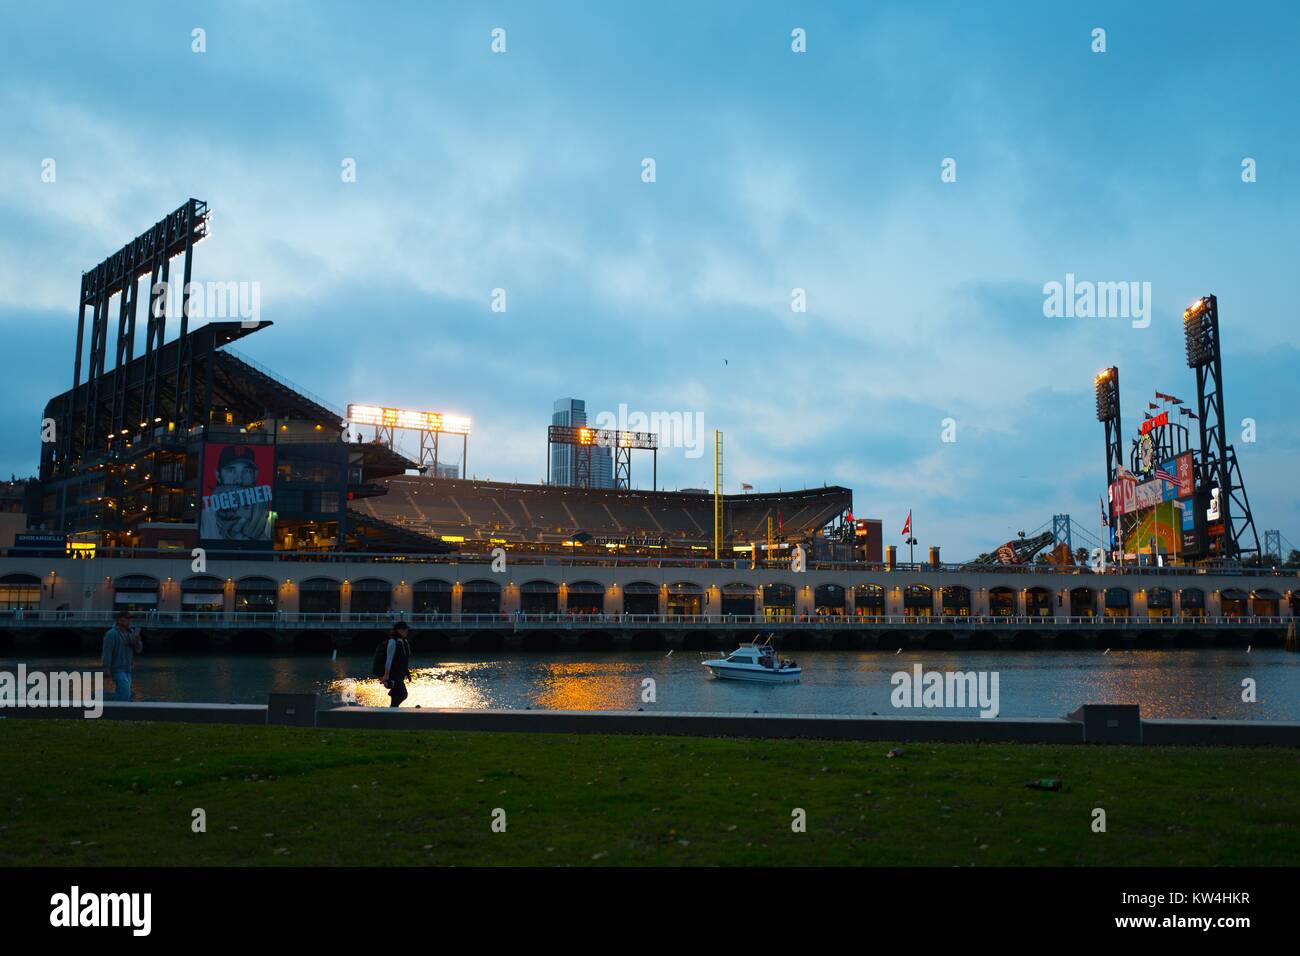 ATT Park, domicile de l'équipe de baseball des Giants de San Francisco, illuminé la nuit après un match à domicile, vu de la Chine à travers le parc du bassin McCovey Cove, San Francisco, Californie, le 21 août 2016. Banque D'Images